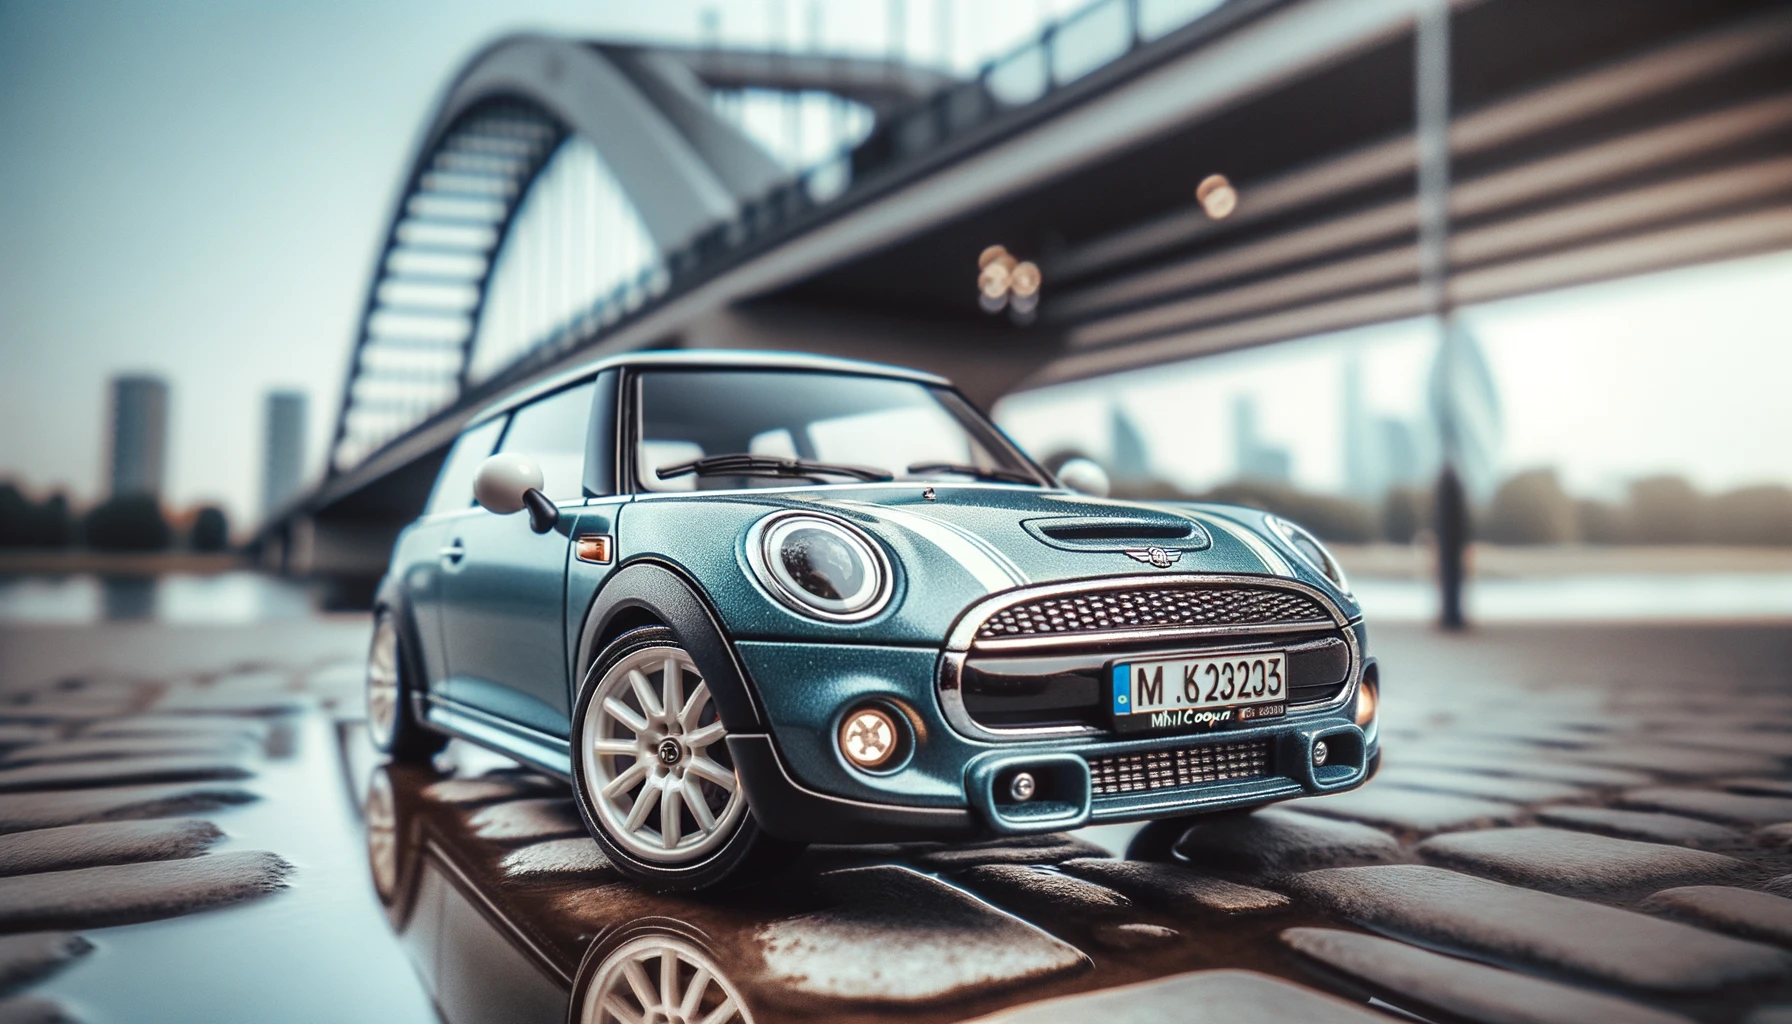 O fotografie orizontală cu o mașină mică și elegantă în stil Mini Cooper care conduce peste un pod în oraș. Masina este albastra cu detalii cromate.